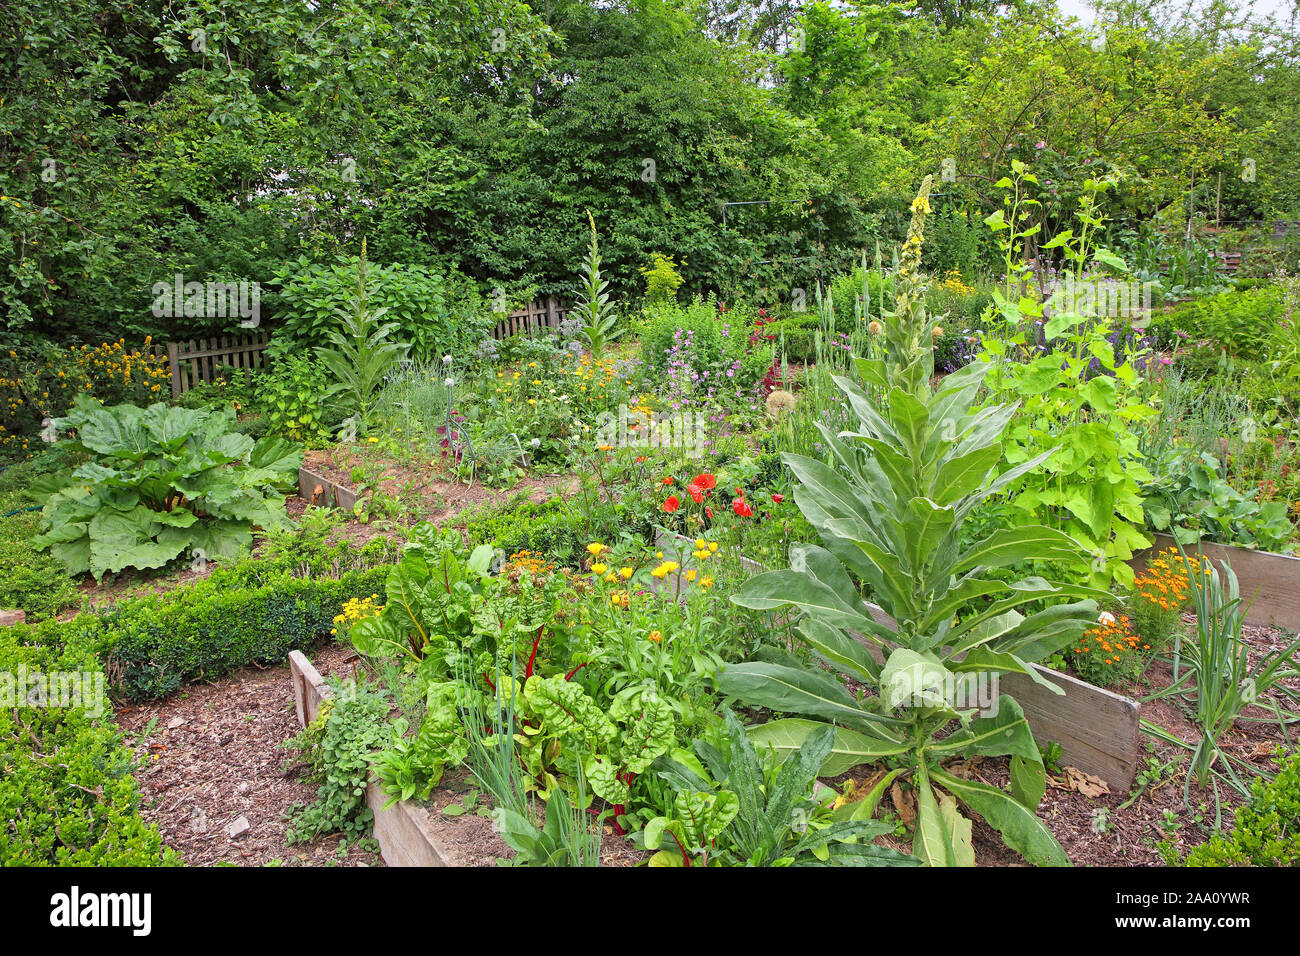 Blick in einen Bauerngarten mit Königskerze (Verbascum) und Gartenmelde im Vordergrund. Stock Photo